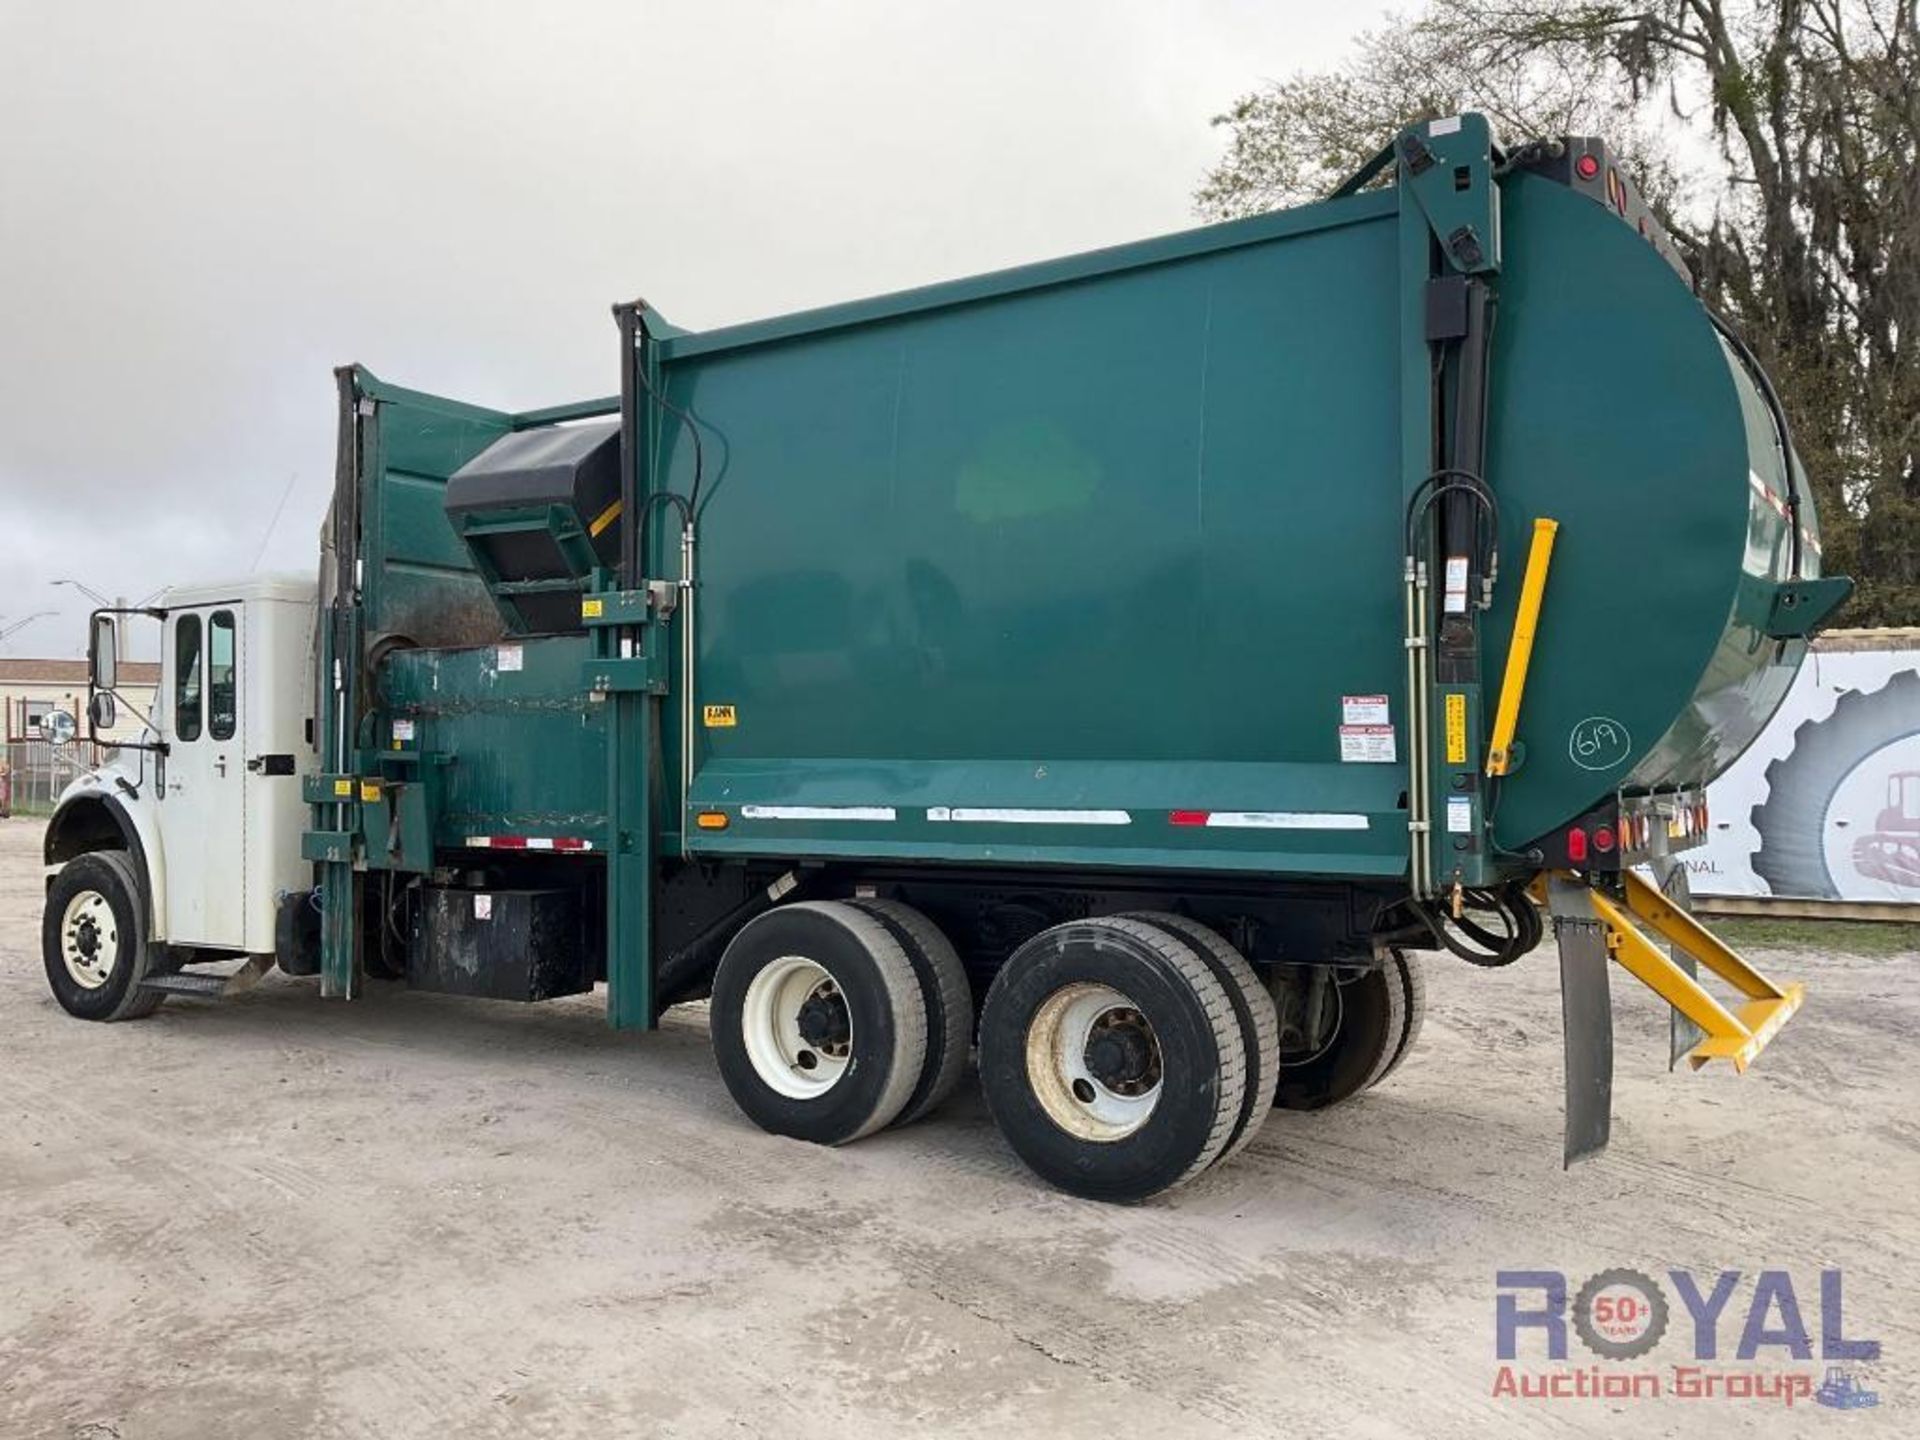 2014 Freightliner M2 106 Side Loader Garbage Truck - Image 4 of 36